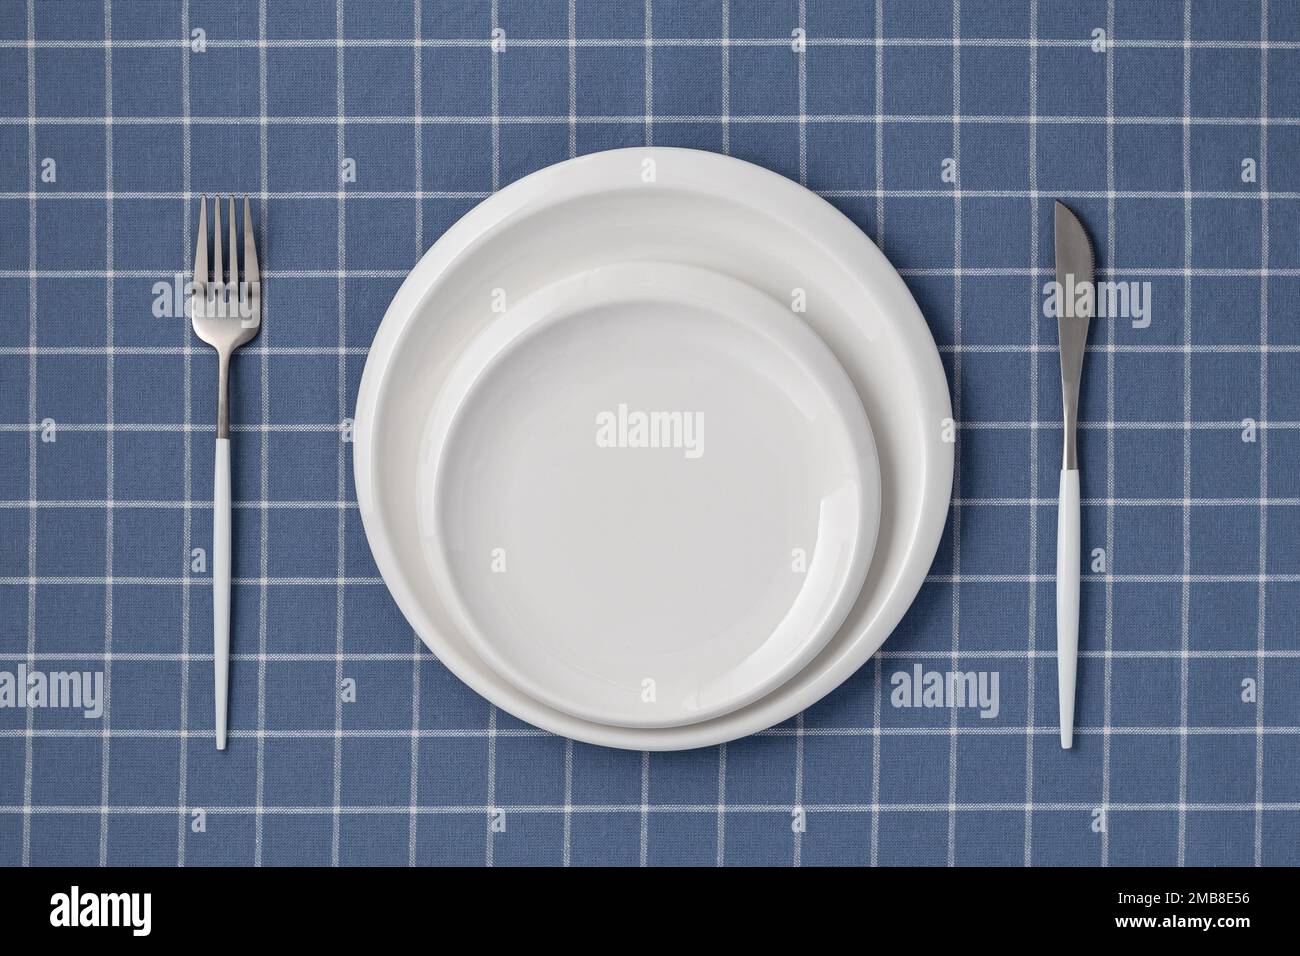 Weißer leerer Teller und Besteck auf einem blauen Tischtuch mit Karomuster, Blick von oben. Flach liegendes Design. Keramikutensilien, Servieren. Tablewar Stockfoto